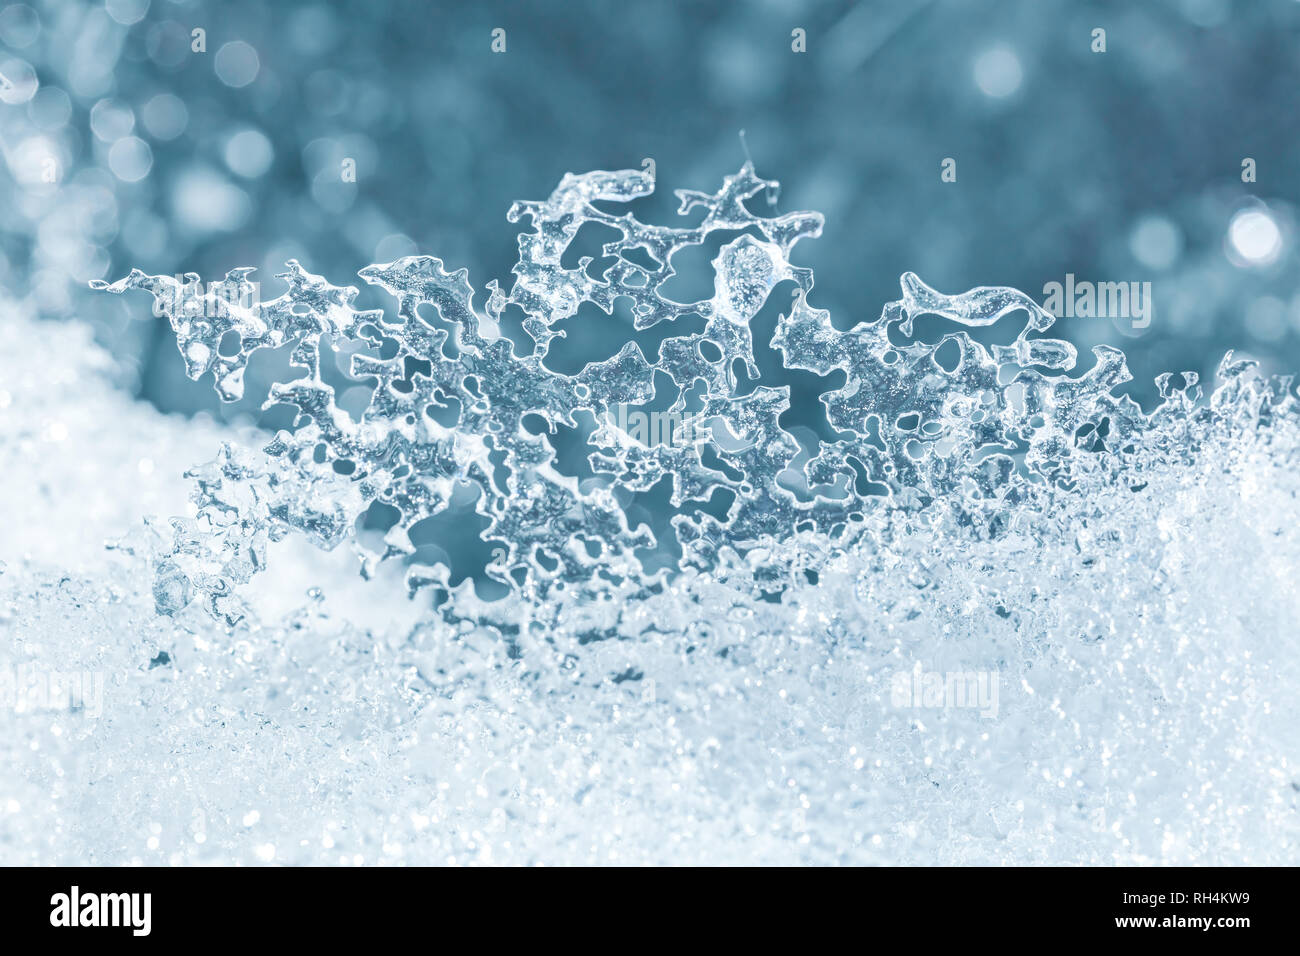 Schmelz vereisten Schnee Textur closeup gegen blaue Lichter Hintergrund verschwommen Stockfoto